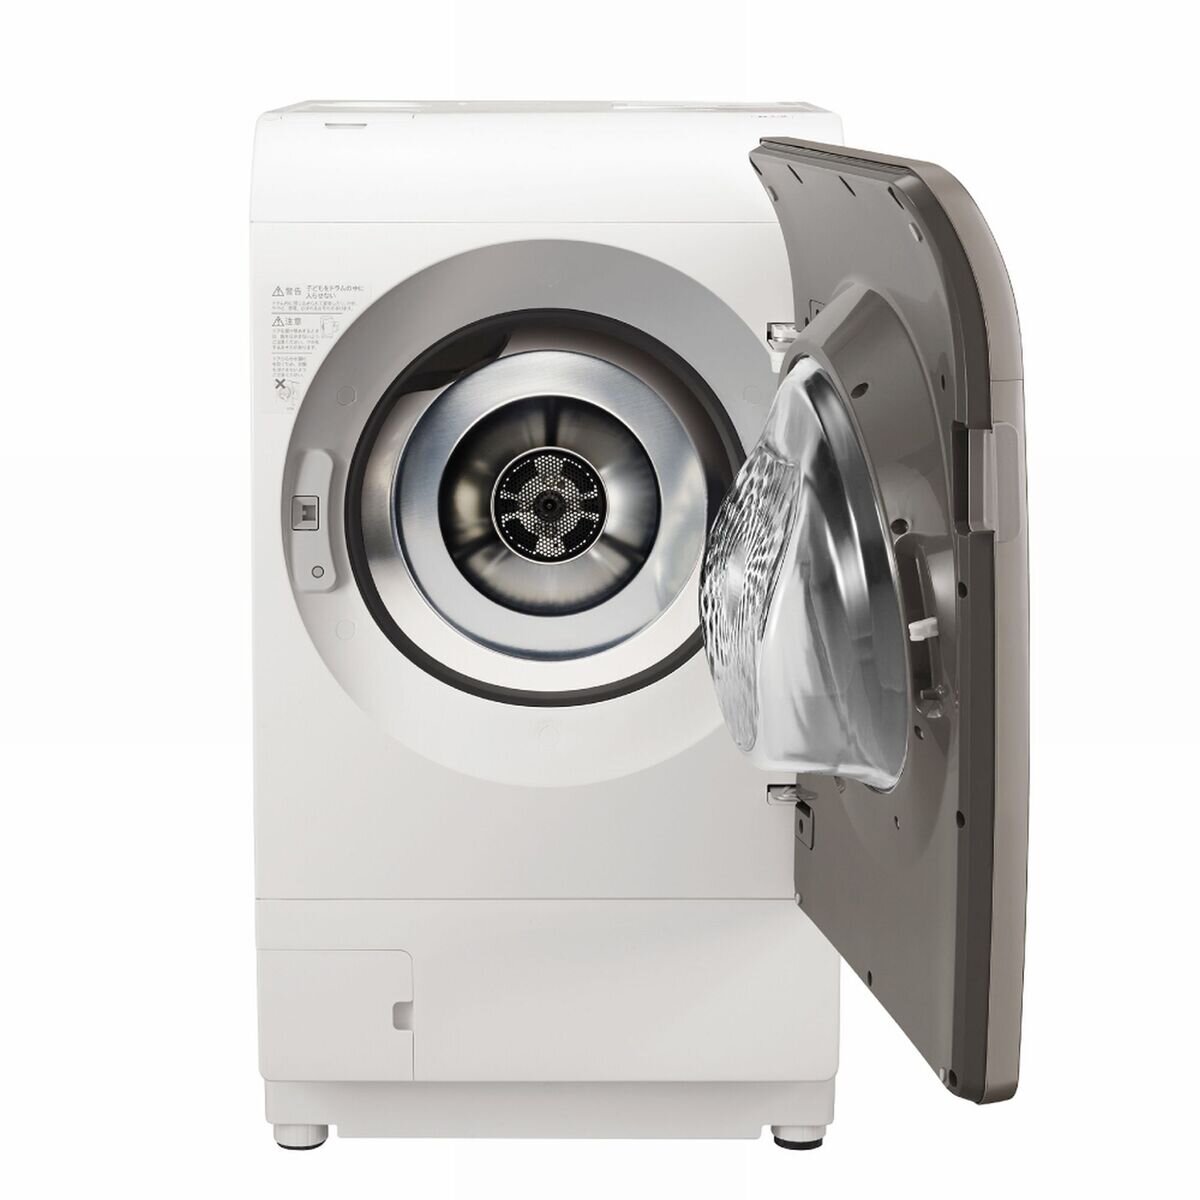 SHARP シャープ ドラム式洗濯乾燥機 ES-G111-NR - 洗濯機